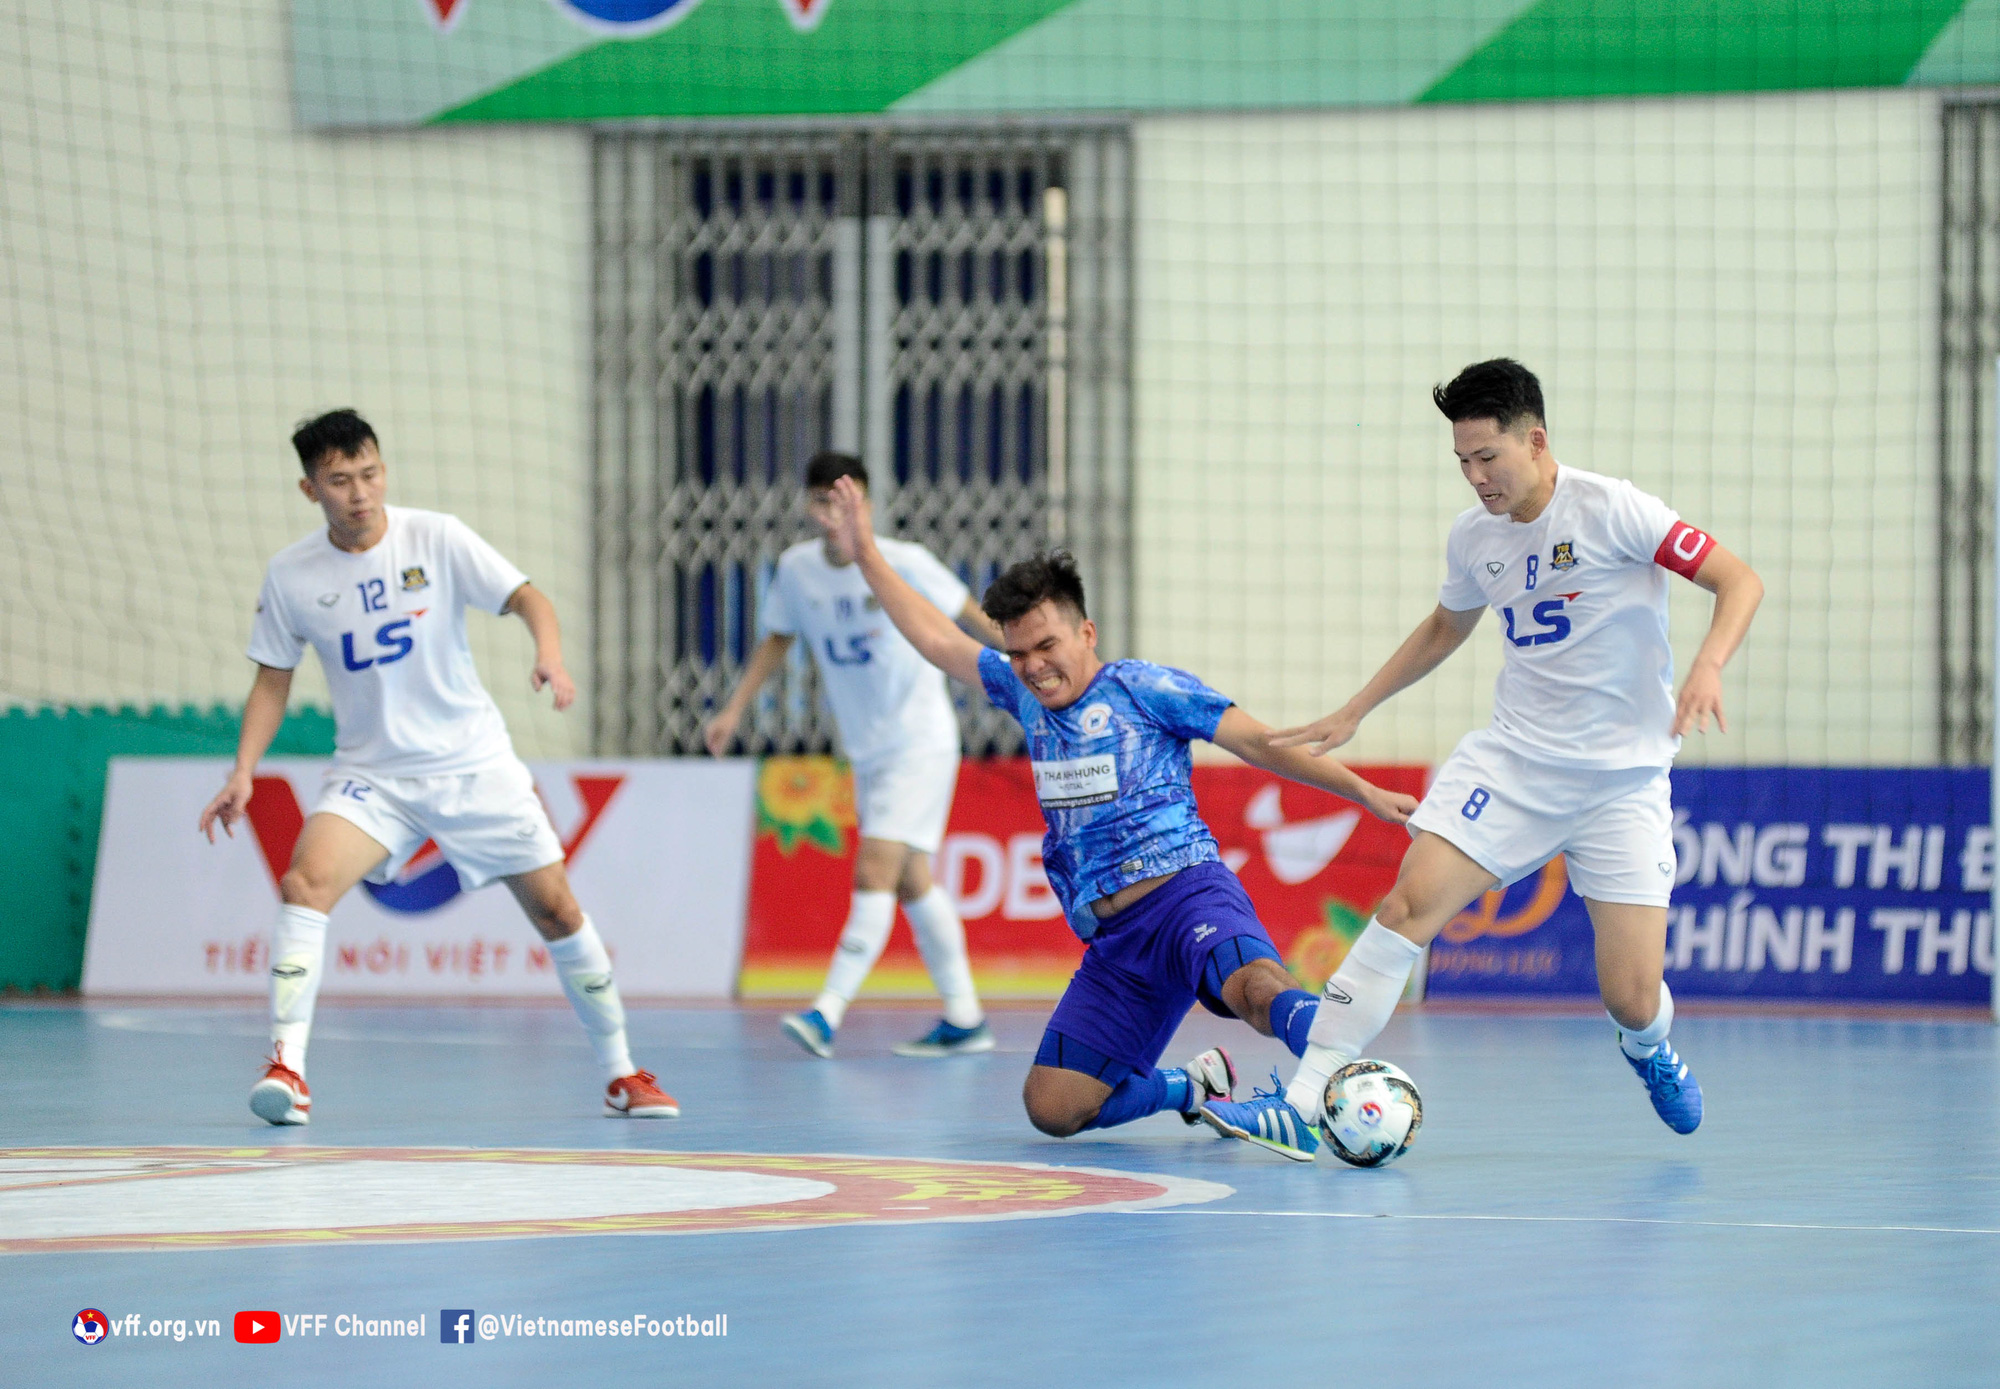 Vòng 8 Giải futsal VĐQG 2022 (ngày 1/7): Thái Sơn Bắc bị chia điểm, Sahako lấy lại ngôi đầu